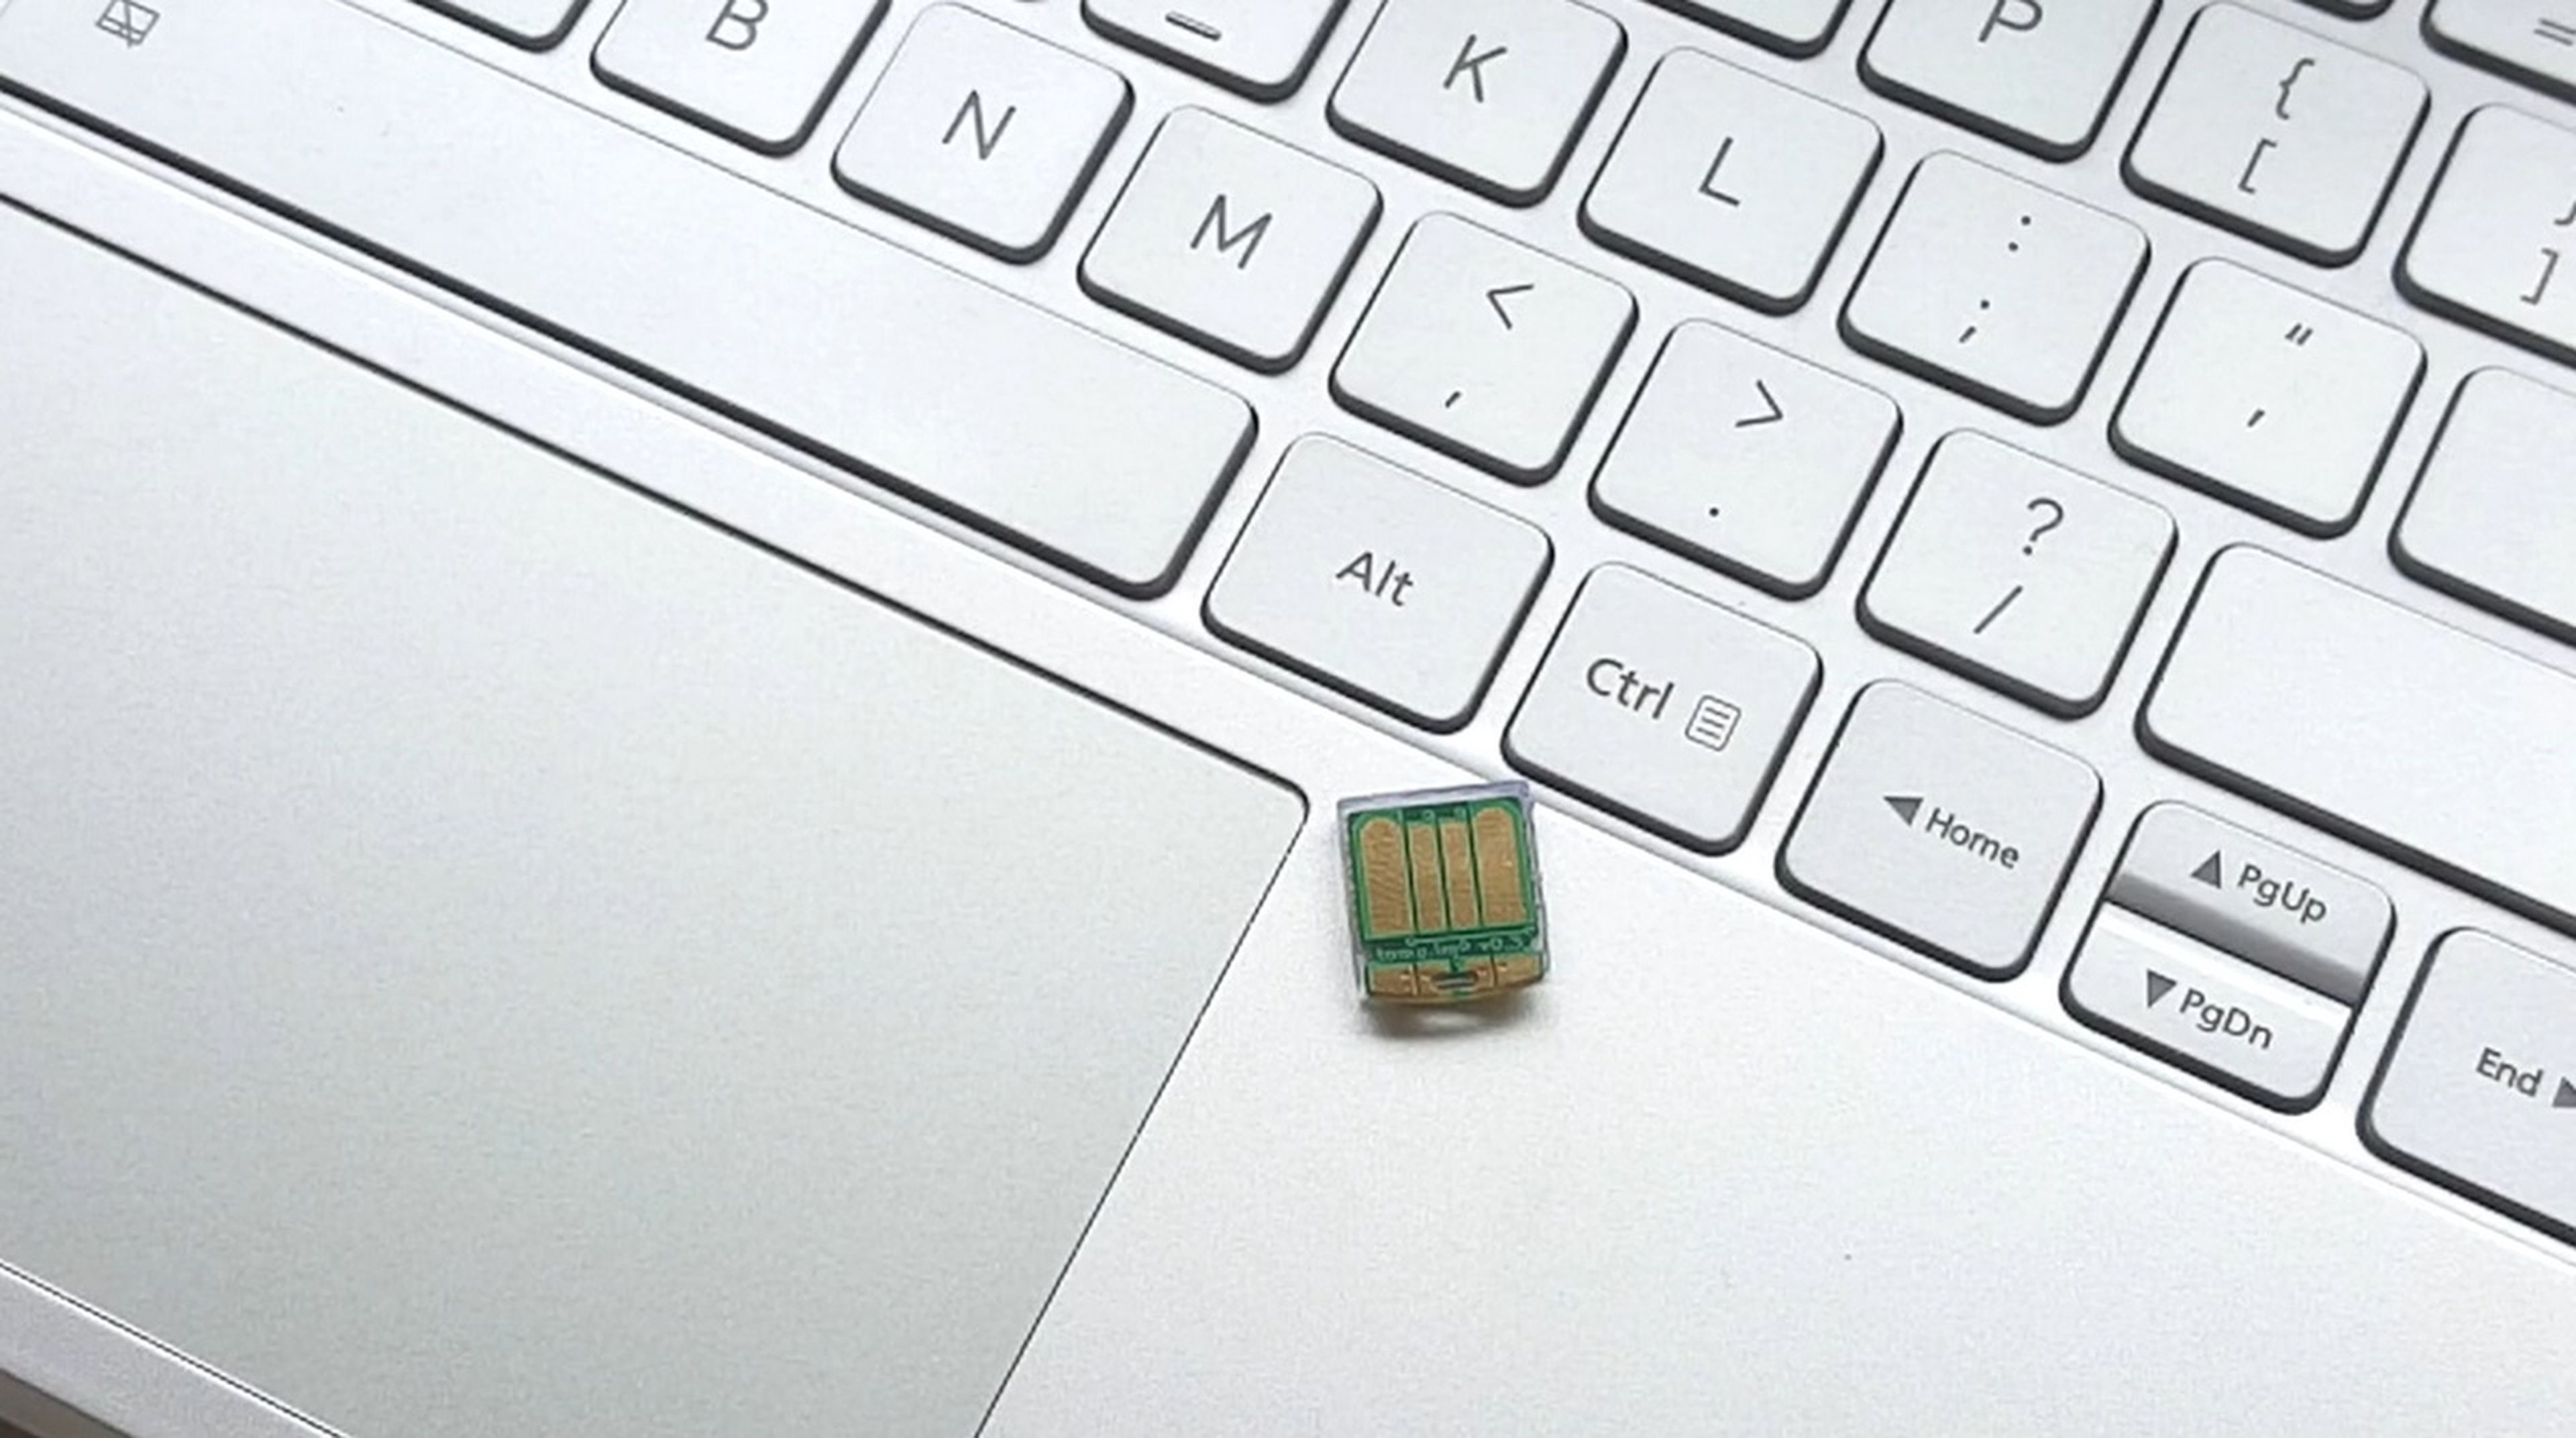 Tomu, el micro PC que cabe dentro de un puerto USB